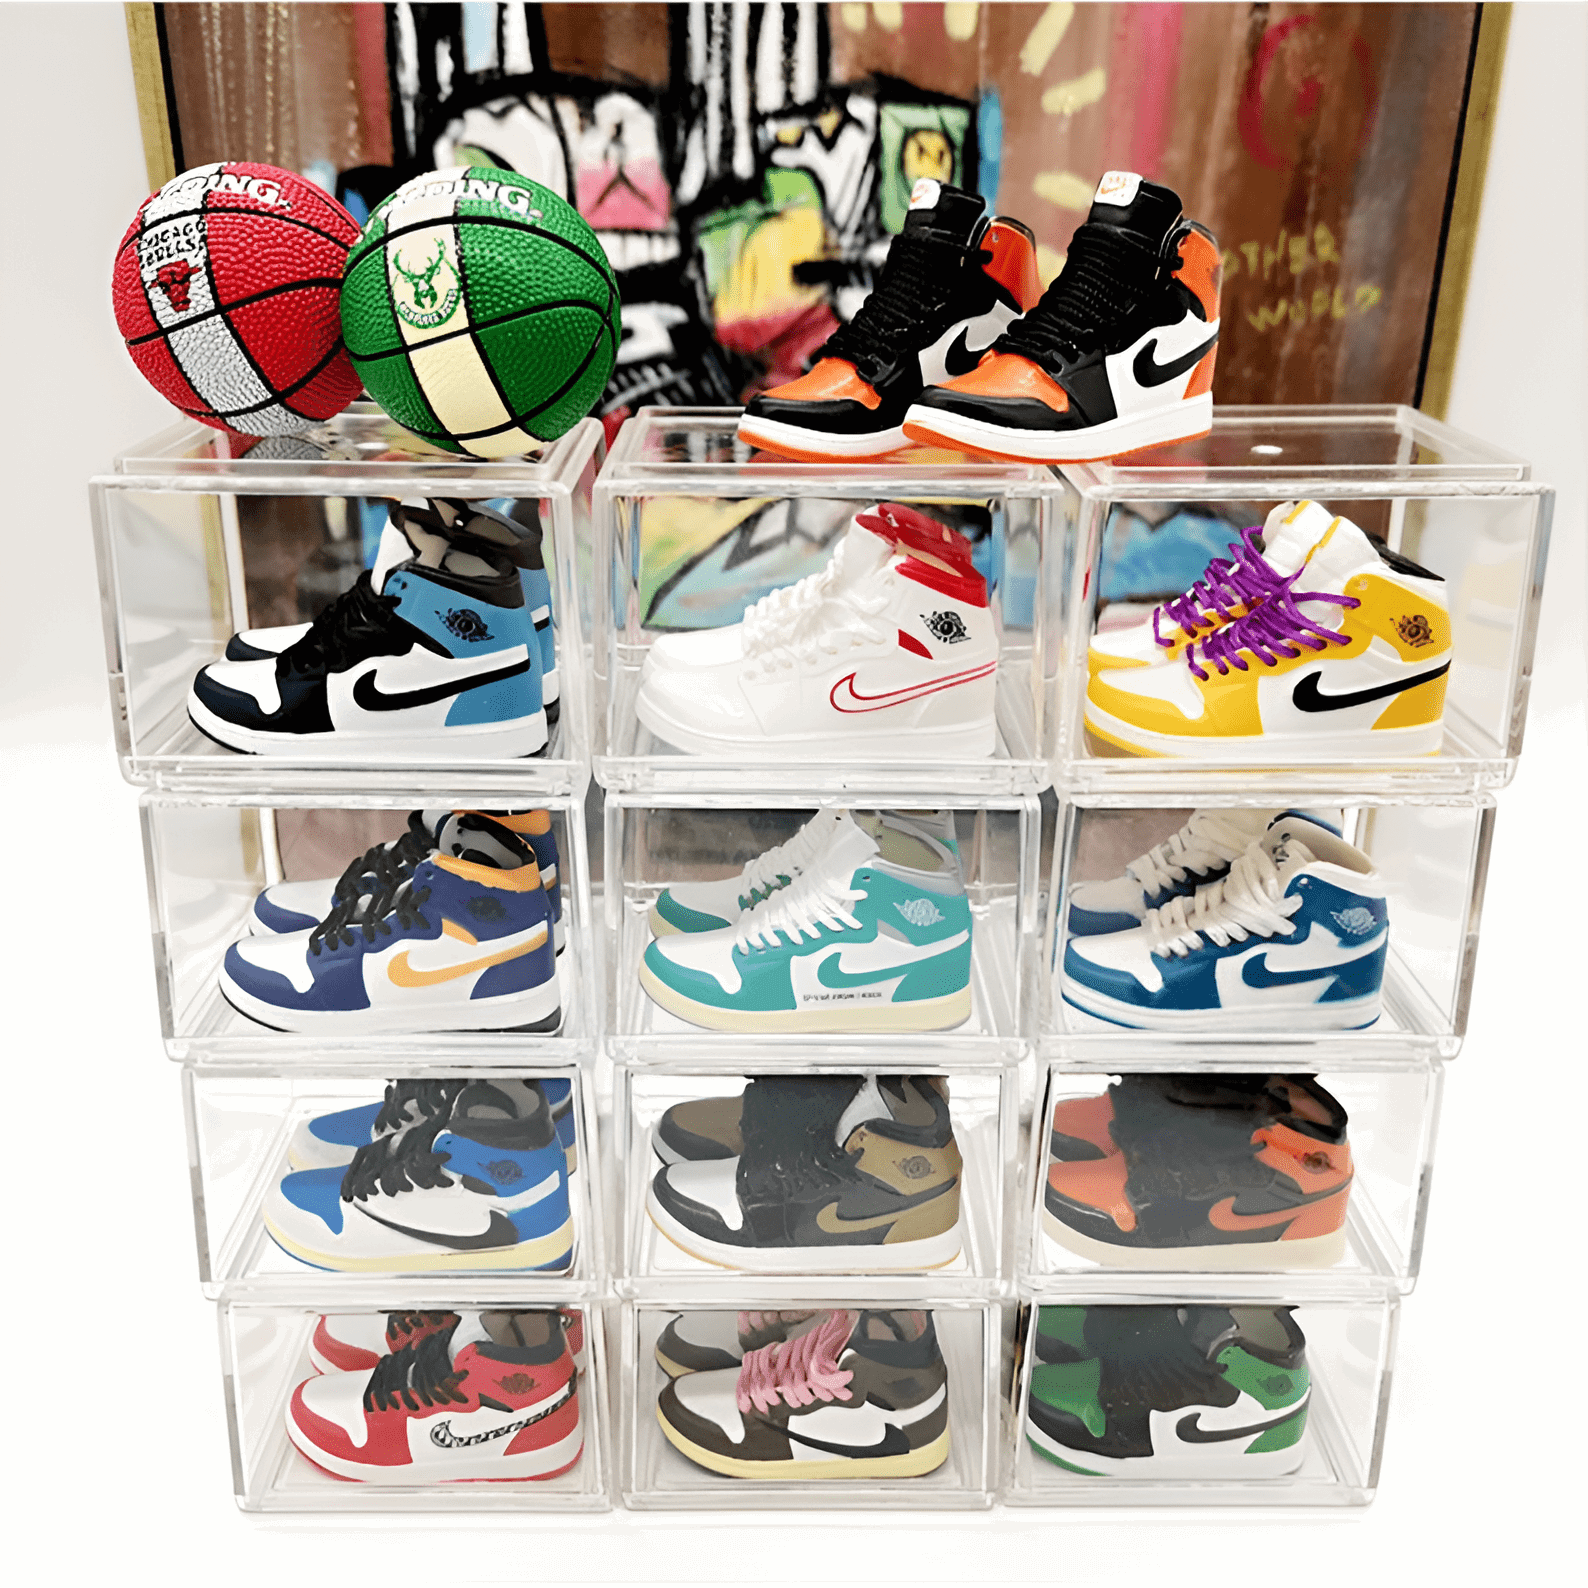 Une boite à chaussures miniature pour les Nike Free 5.0